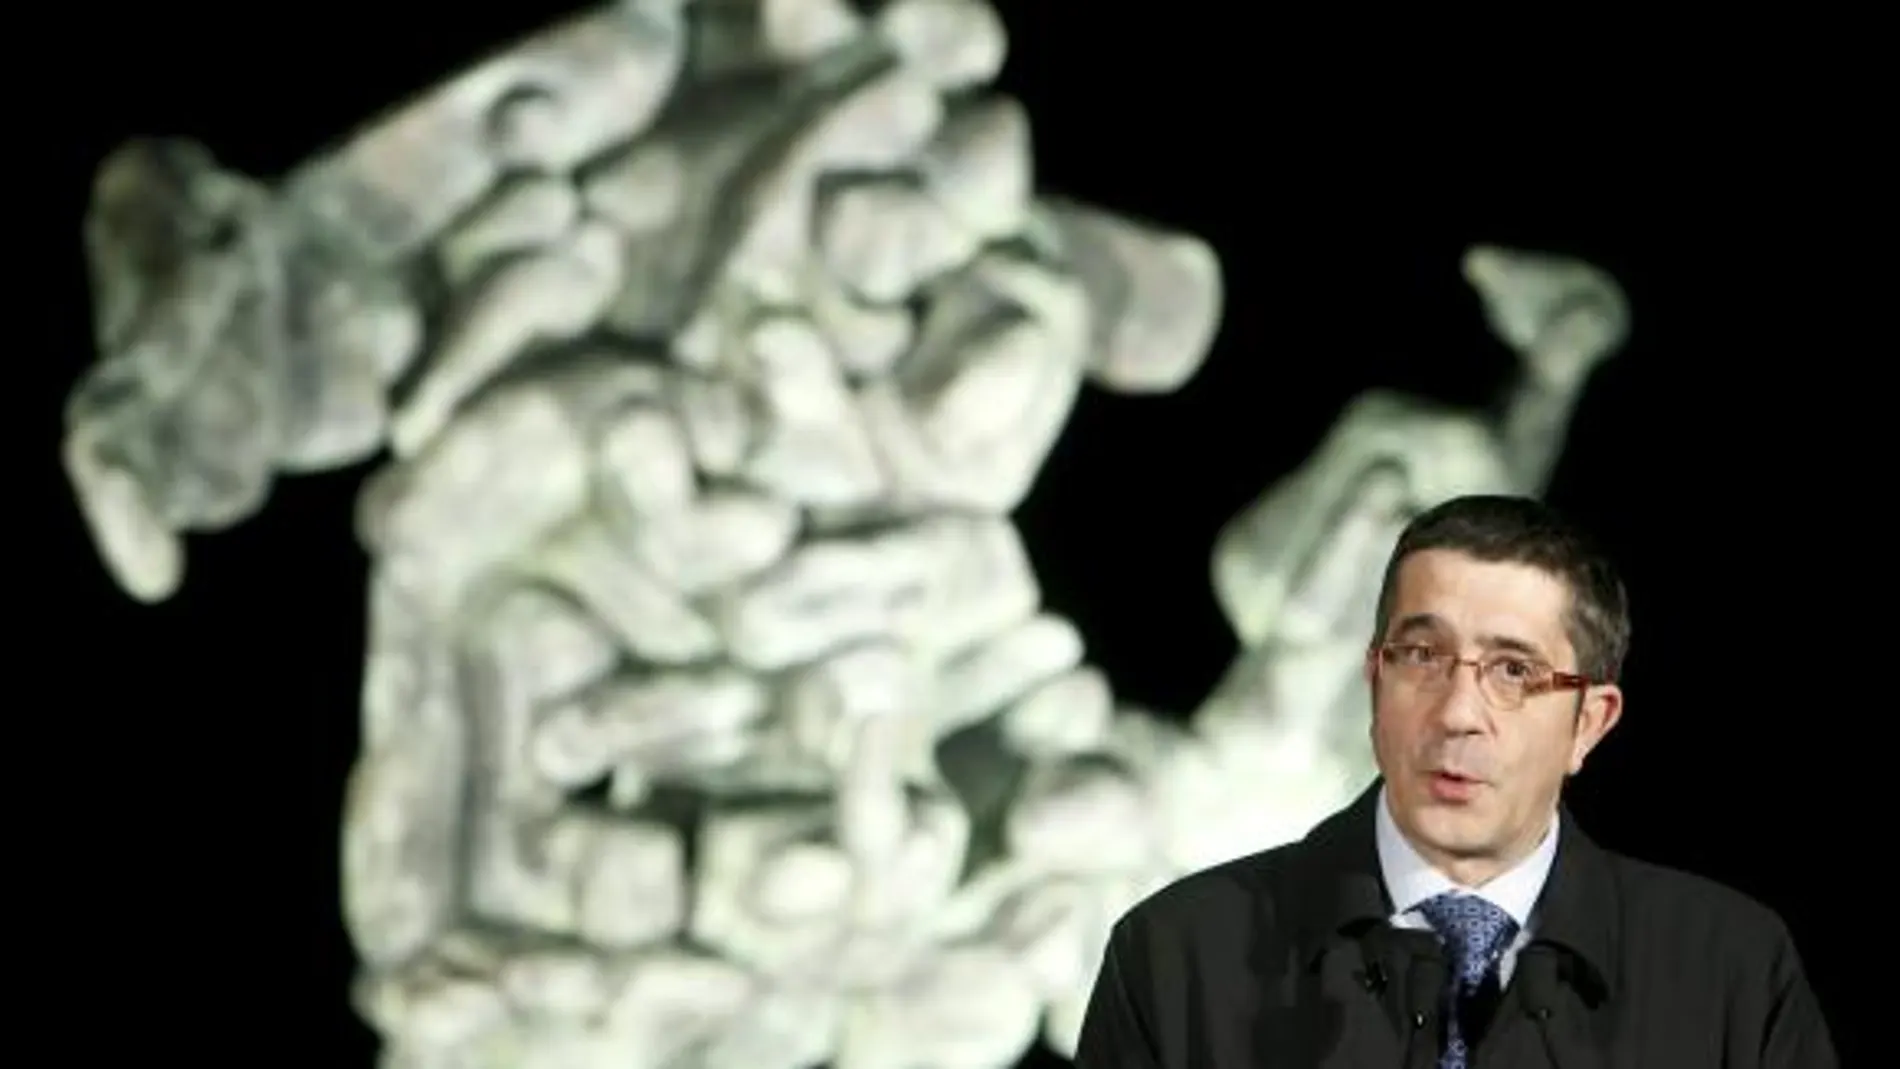 El lehendakari, Patxi López, durante su intervención en la inauguración de un monolito en homenaje a las víctimas del terrorismo en el parque José Luis López de Lacalle en Andoain